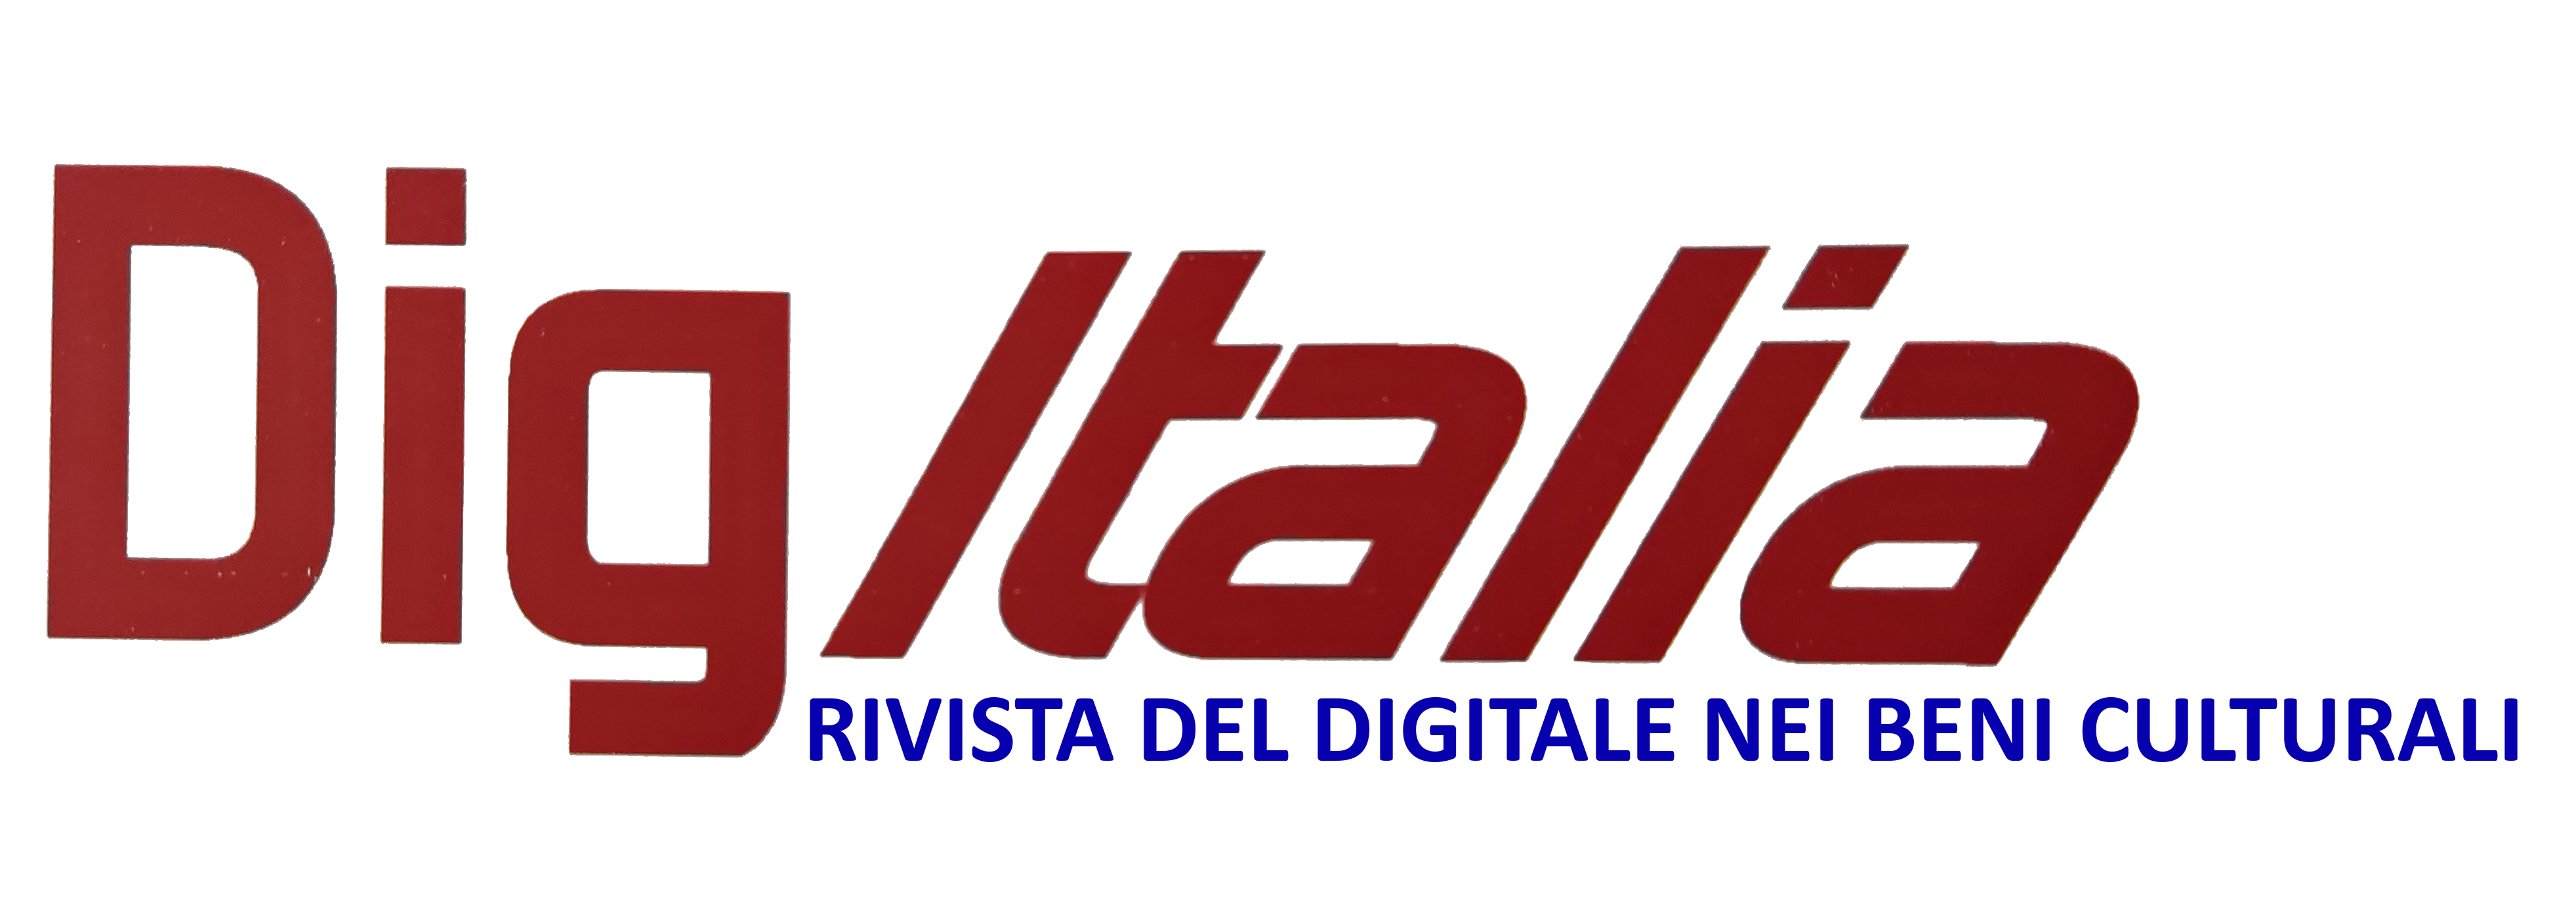 DigItalia - rivista del digitale nei beni culturali